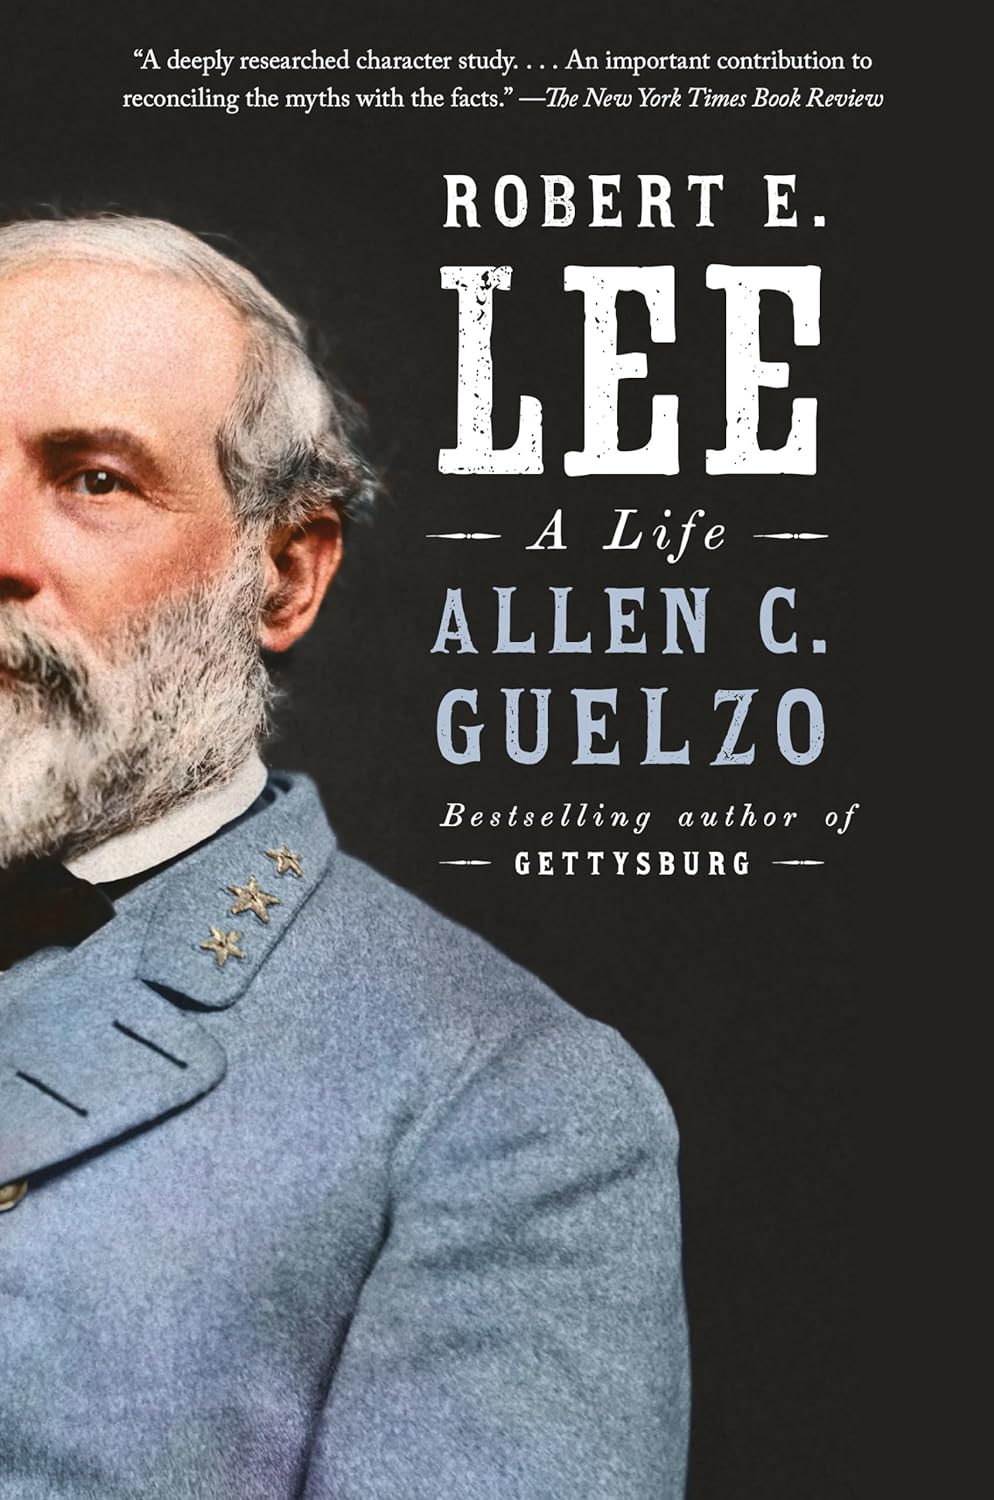 Allen C. Guelzo, Robert E. Lee biography book cover